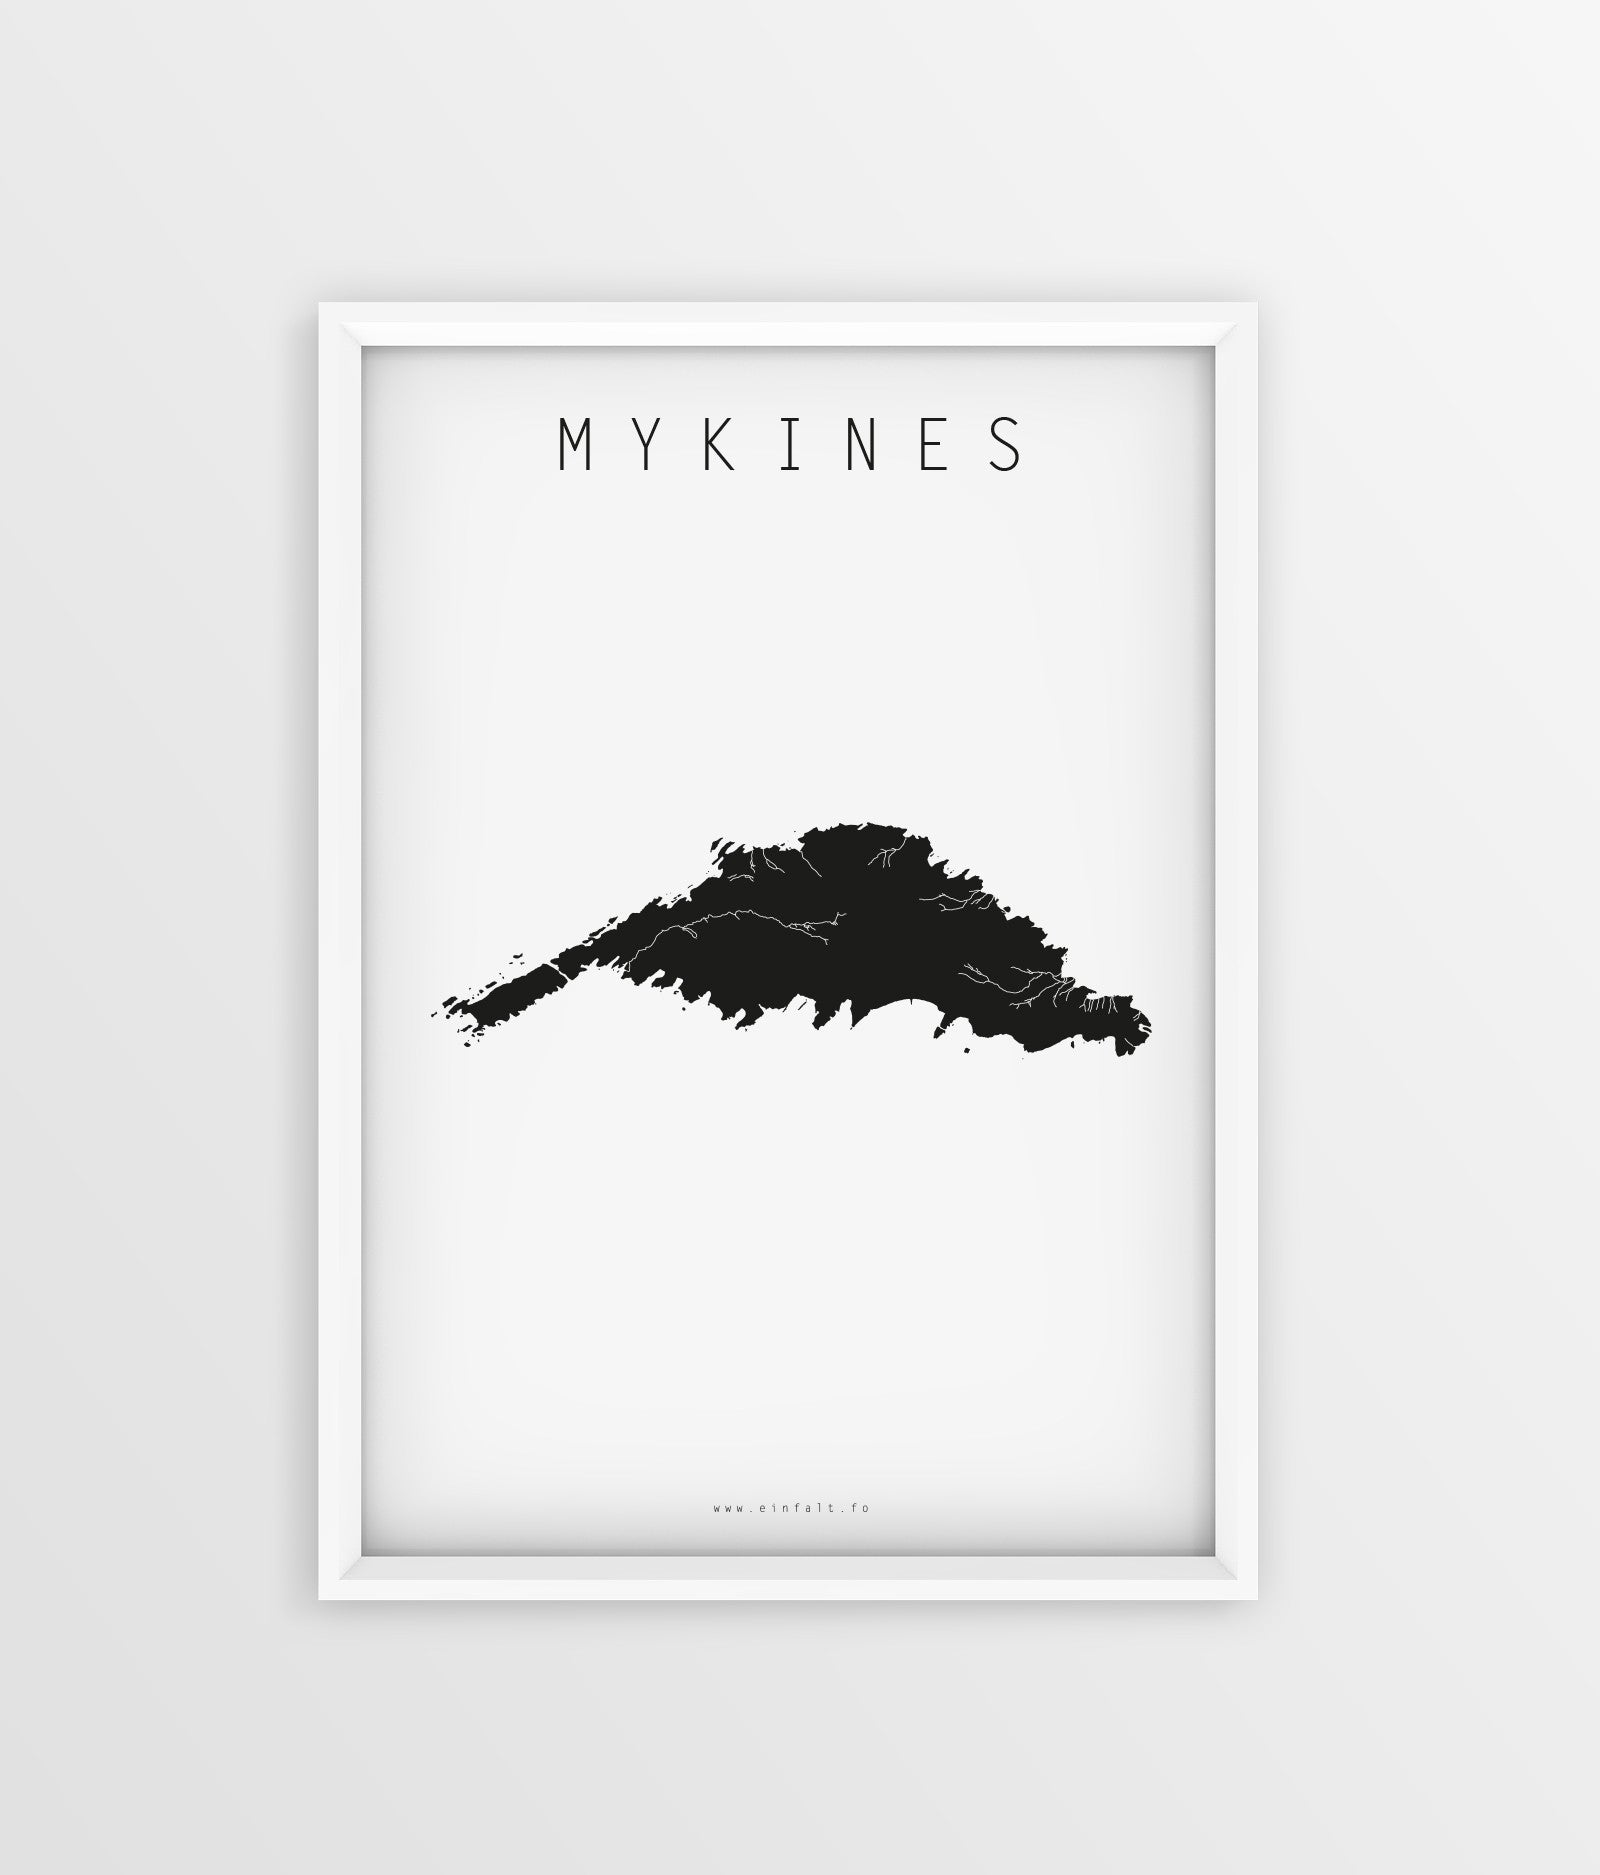 18 oyggjar - Mykines - Føroyskar Plakatir - Faroe islands posters - Færøske plakater - Føroyar - Færøerne - Føroyakort